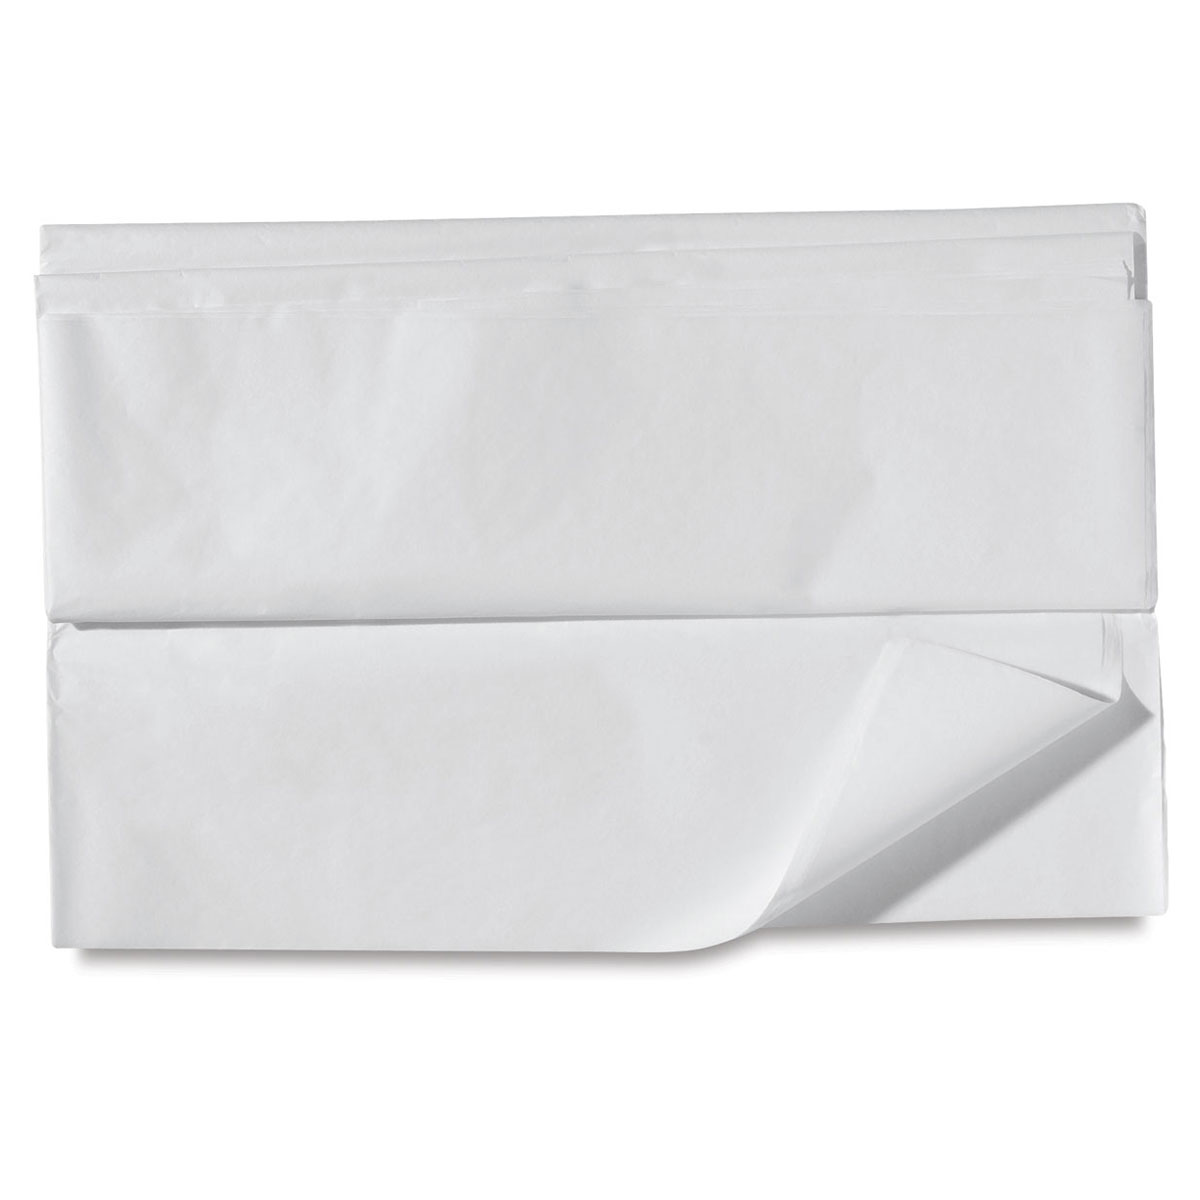 Acid-Free Grade Tissue Paper - 30 x 20 - 2,400/Box - White